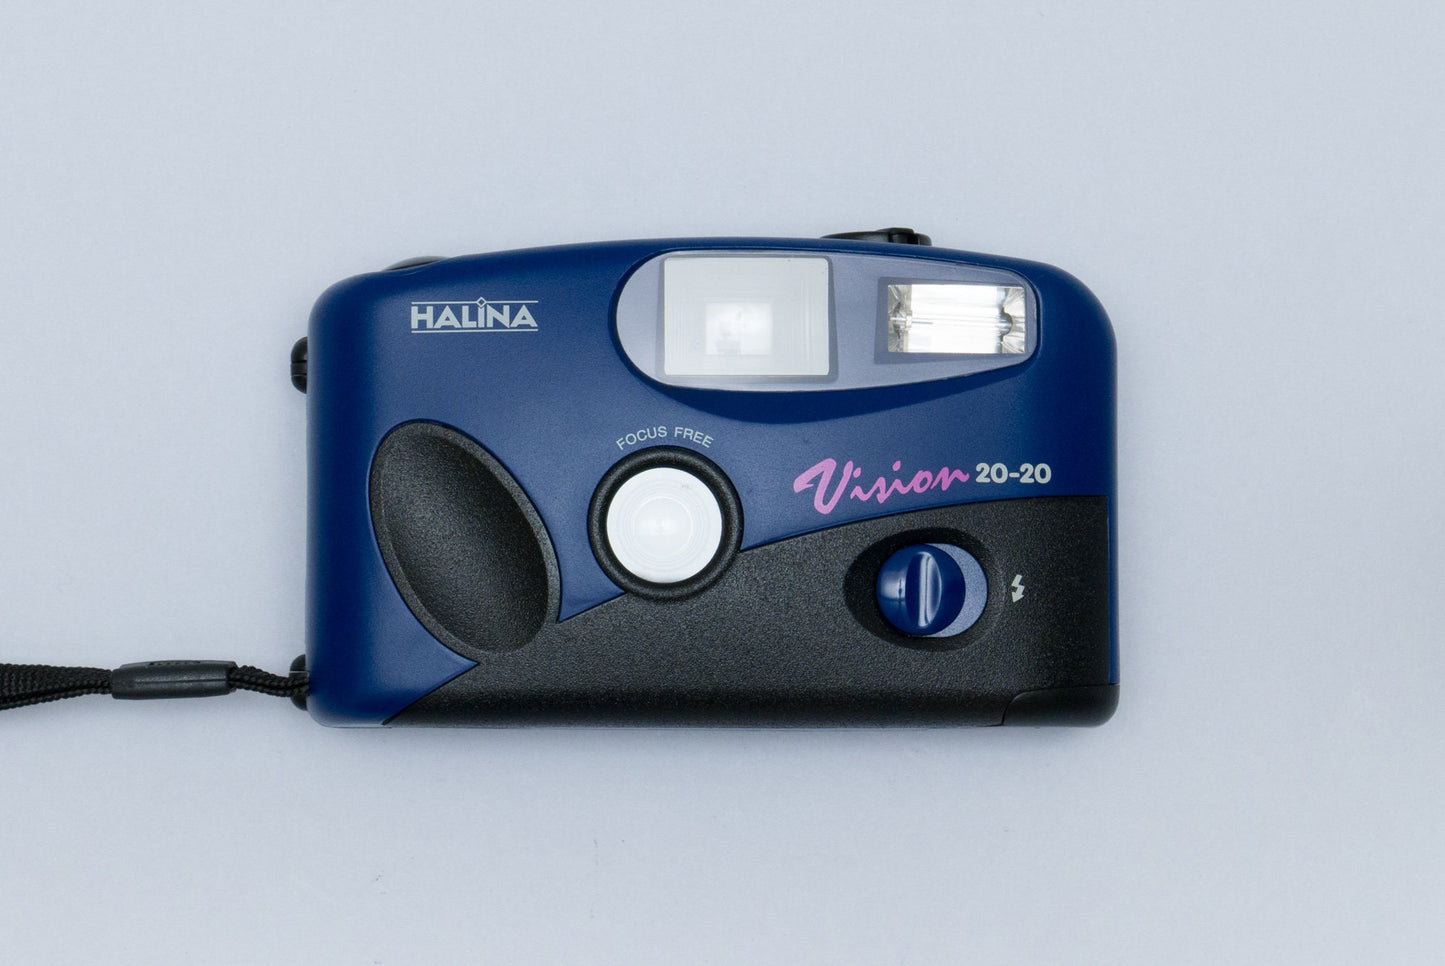 Halina Vision 20-20 Compact 35mm Point and Shoot Film Camera